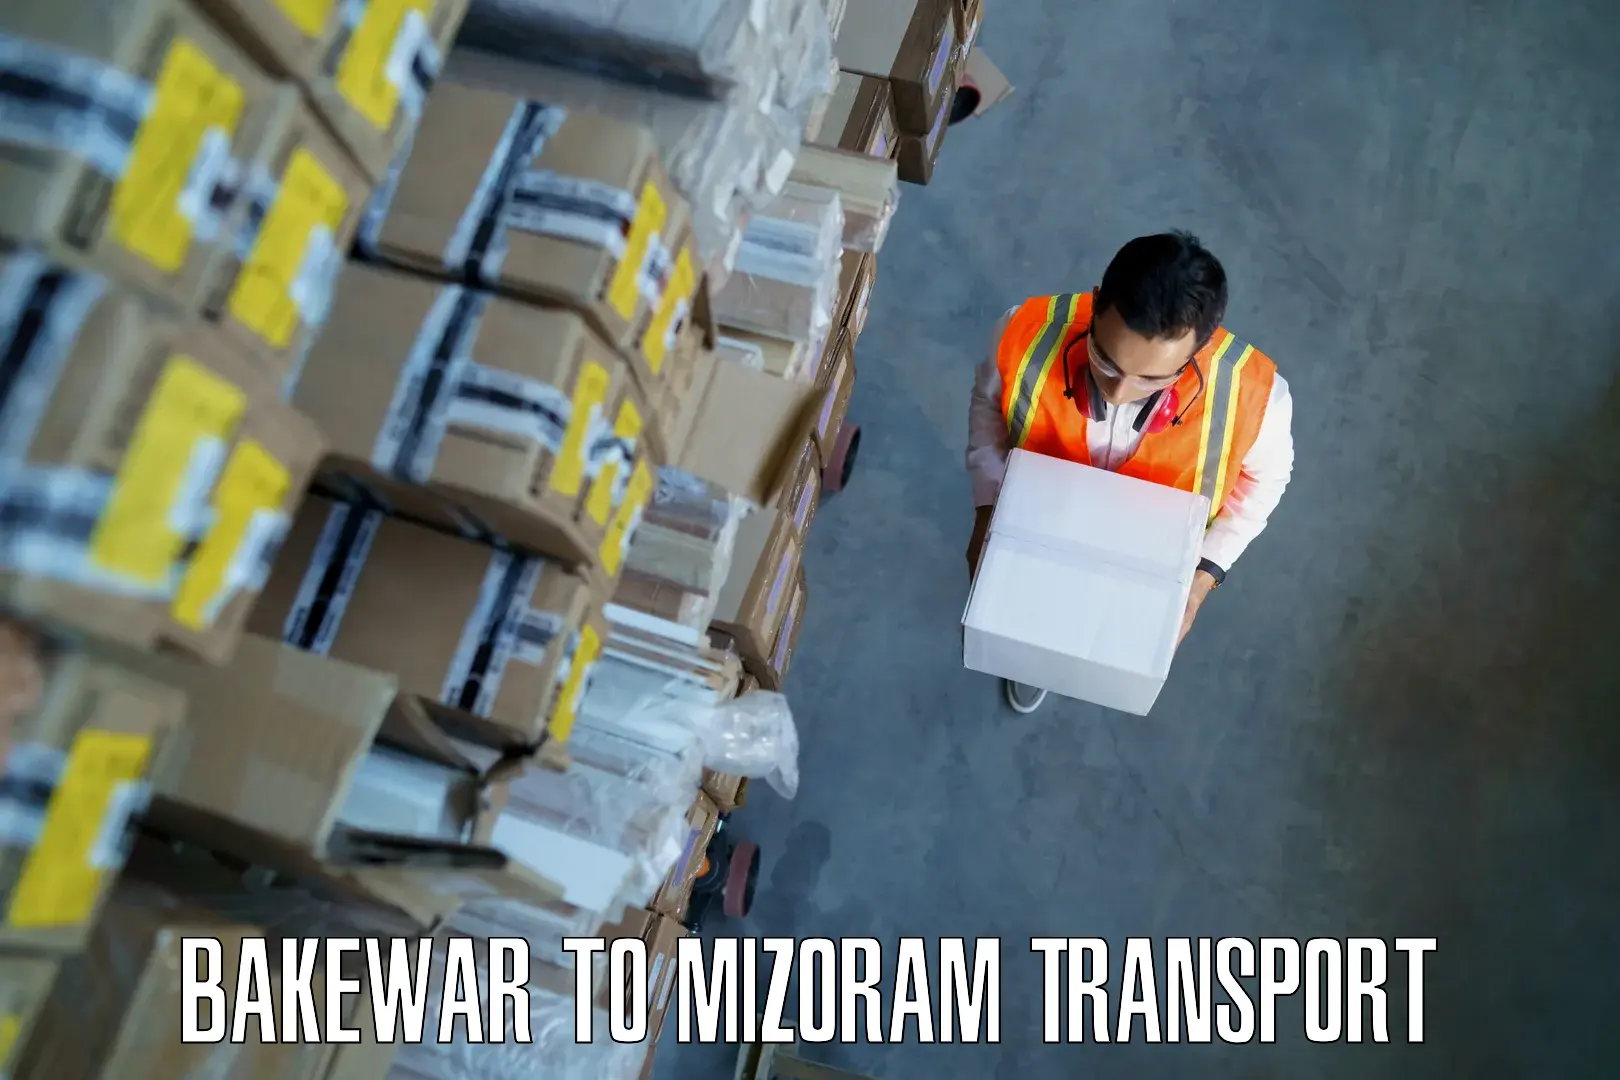 Transport in sharing Bakewar to Mizoram